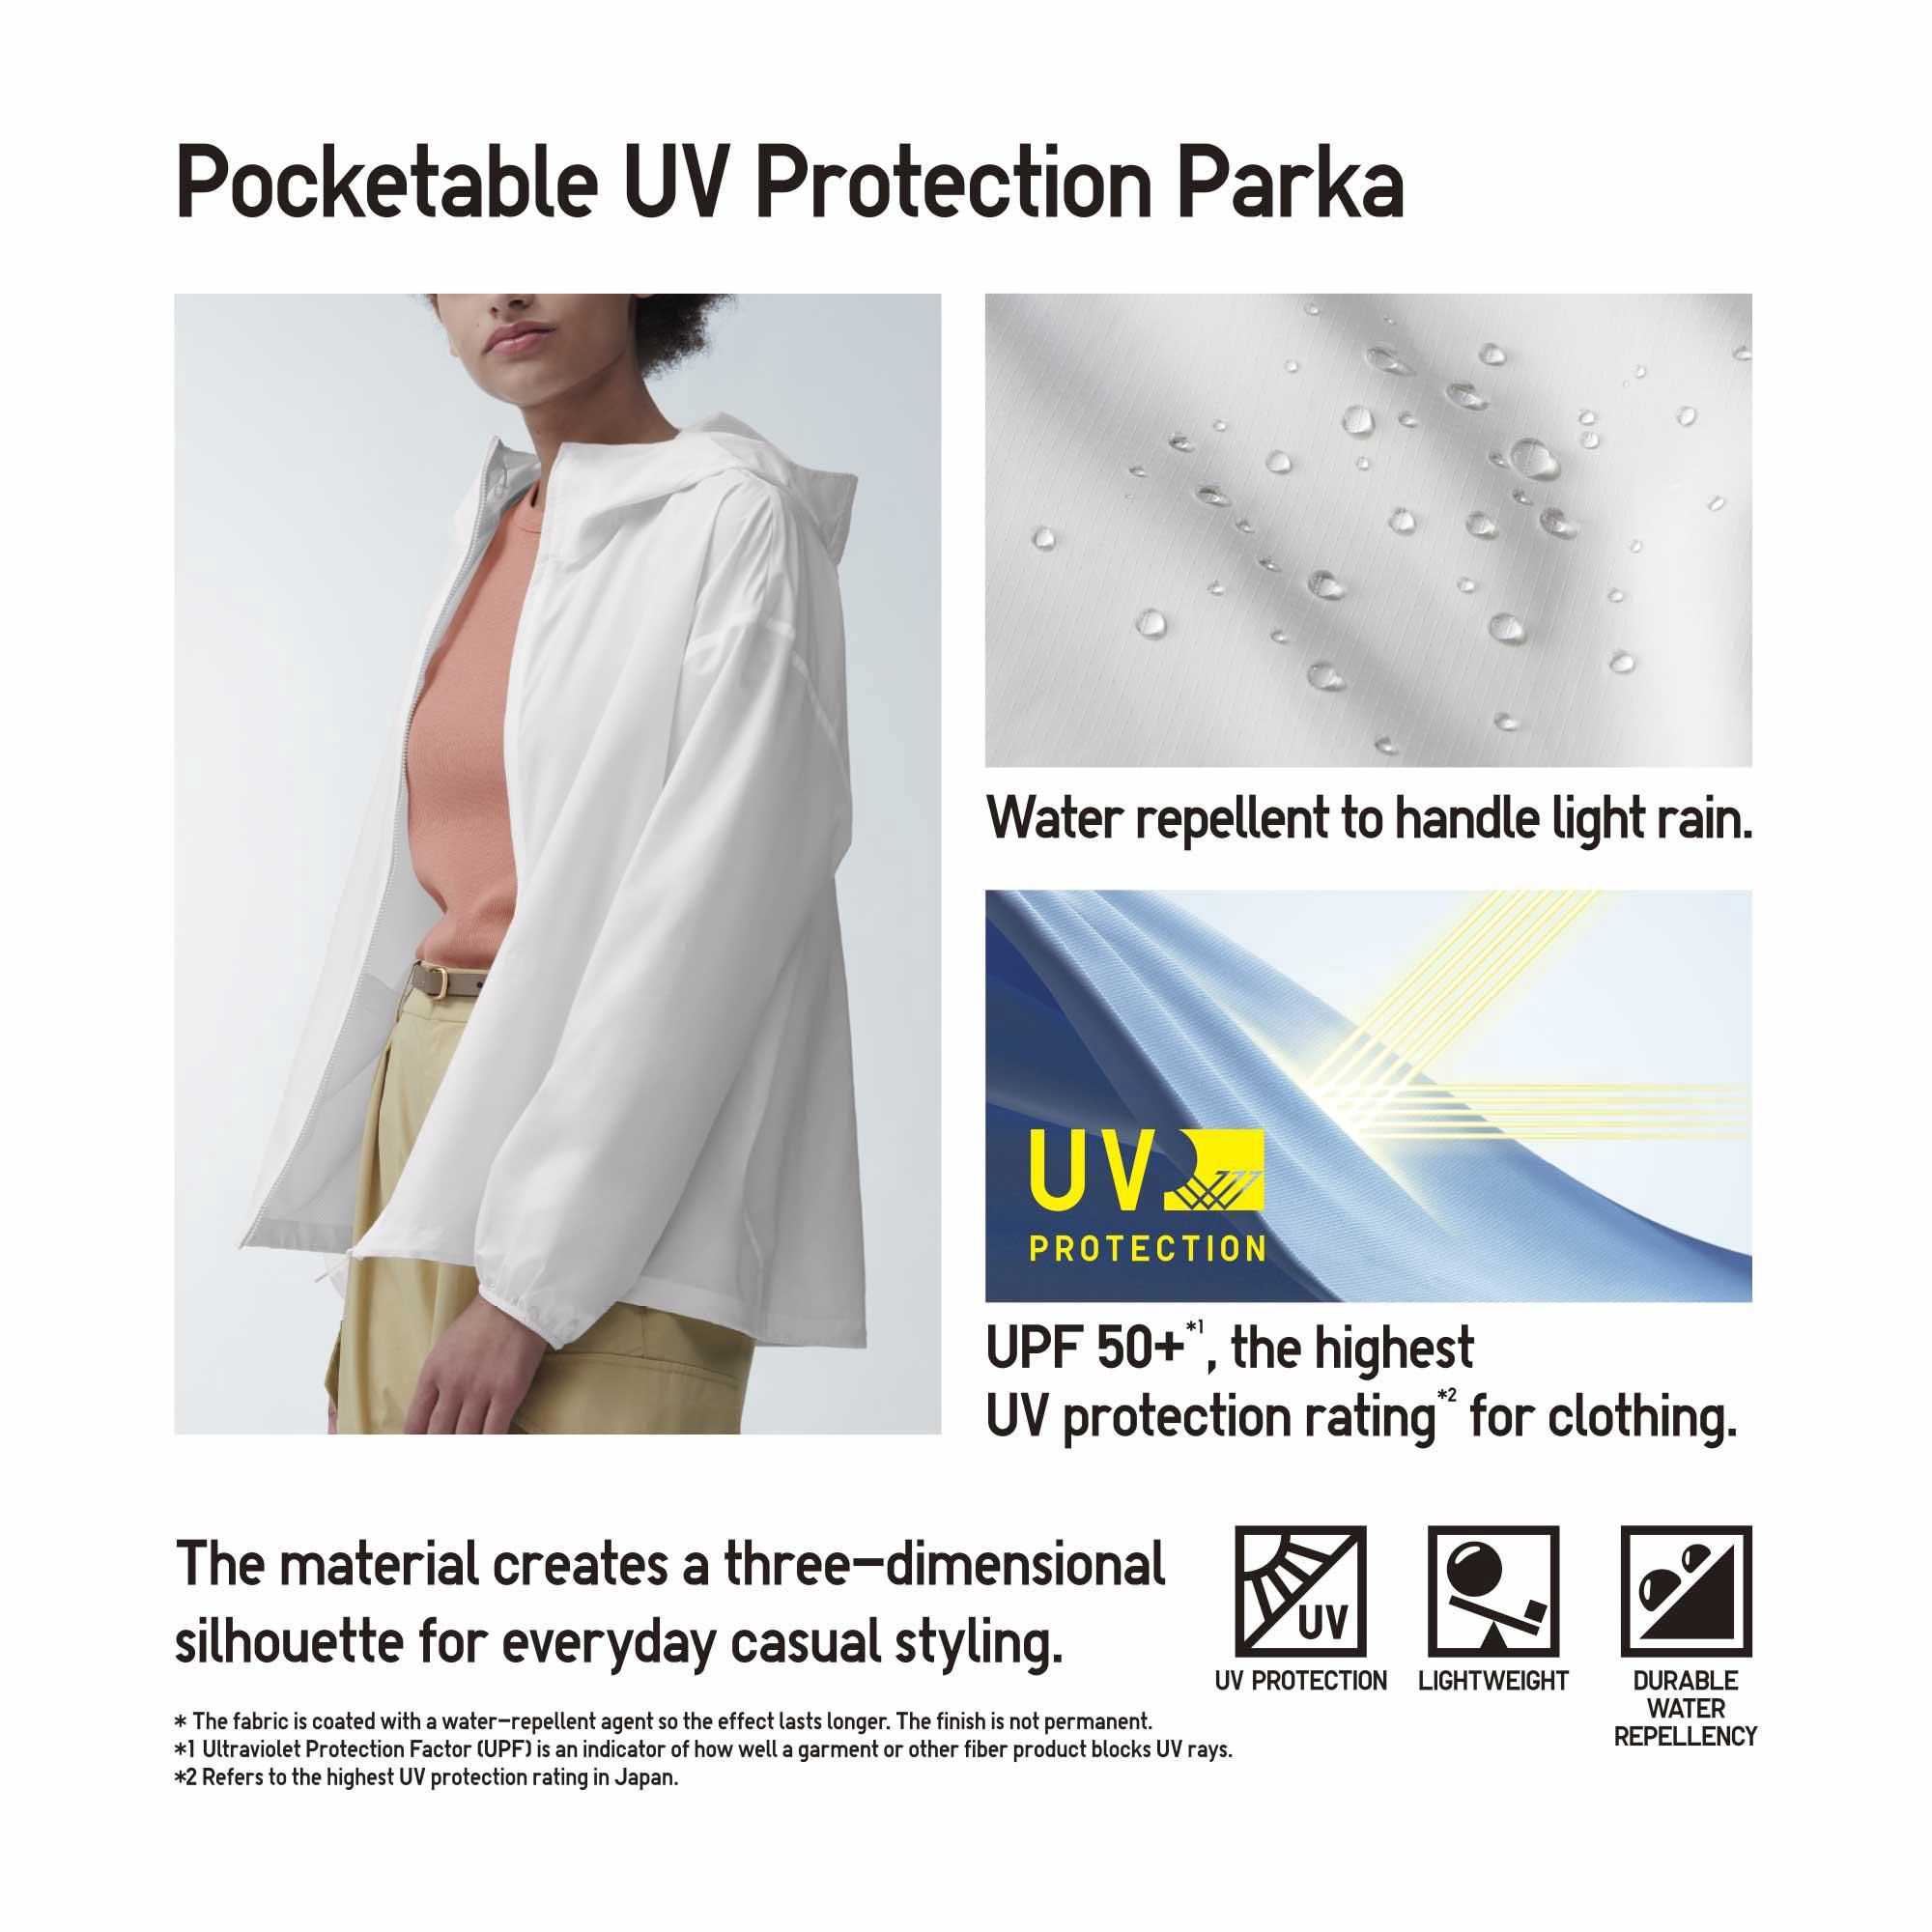 POCKETABLE UV PROTECTION PARKA